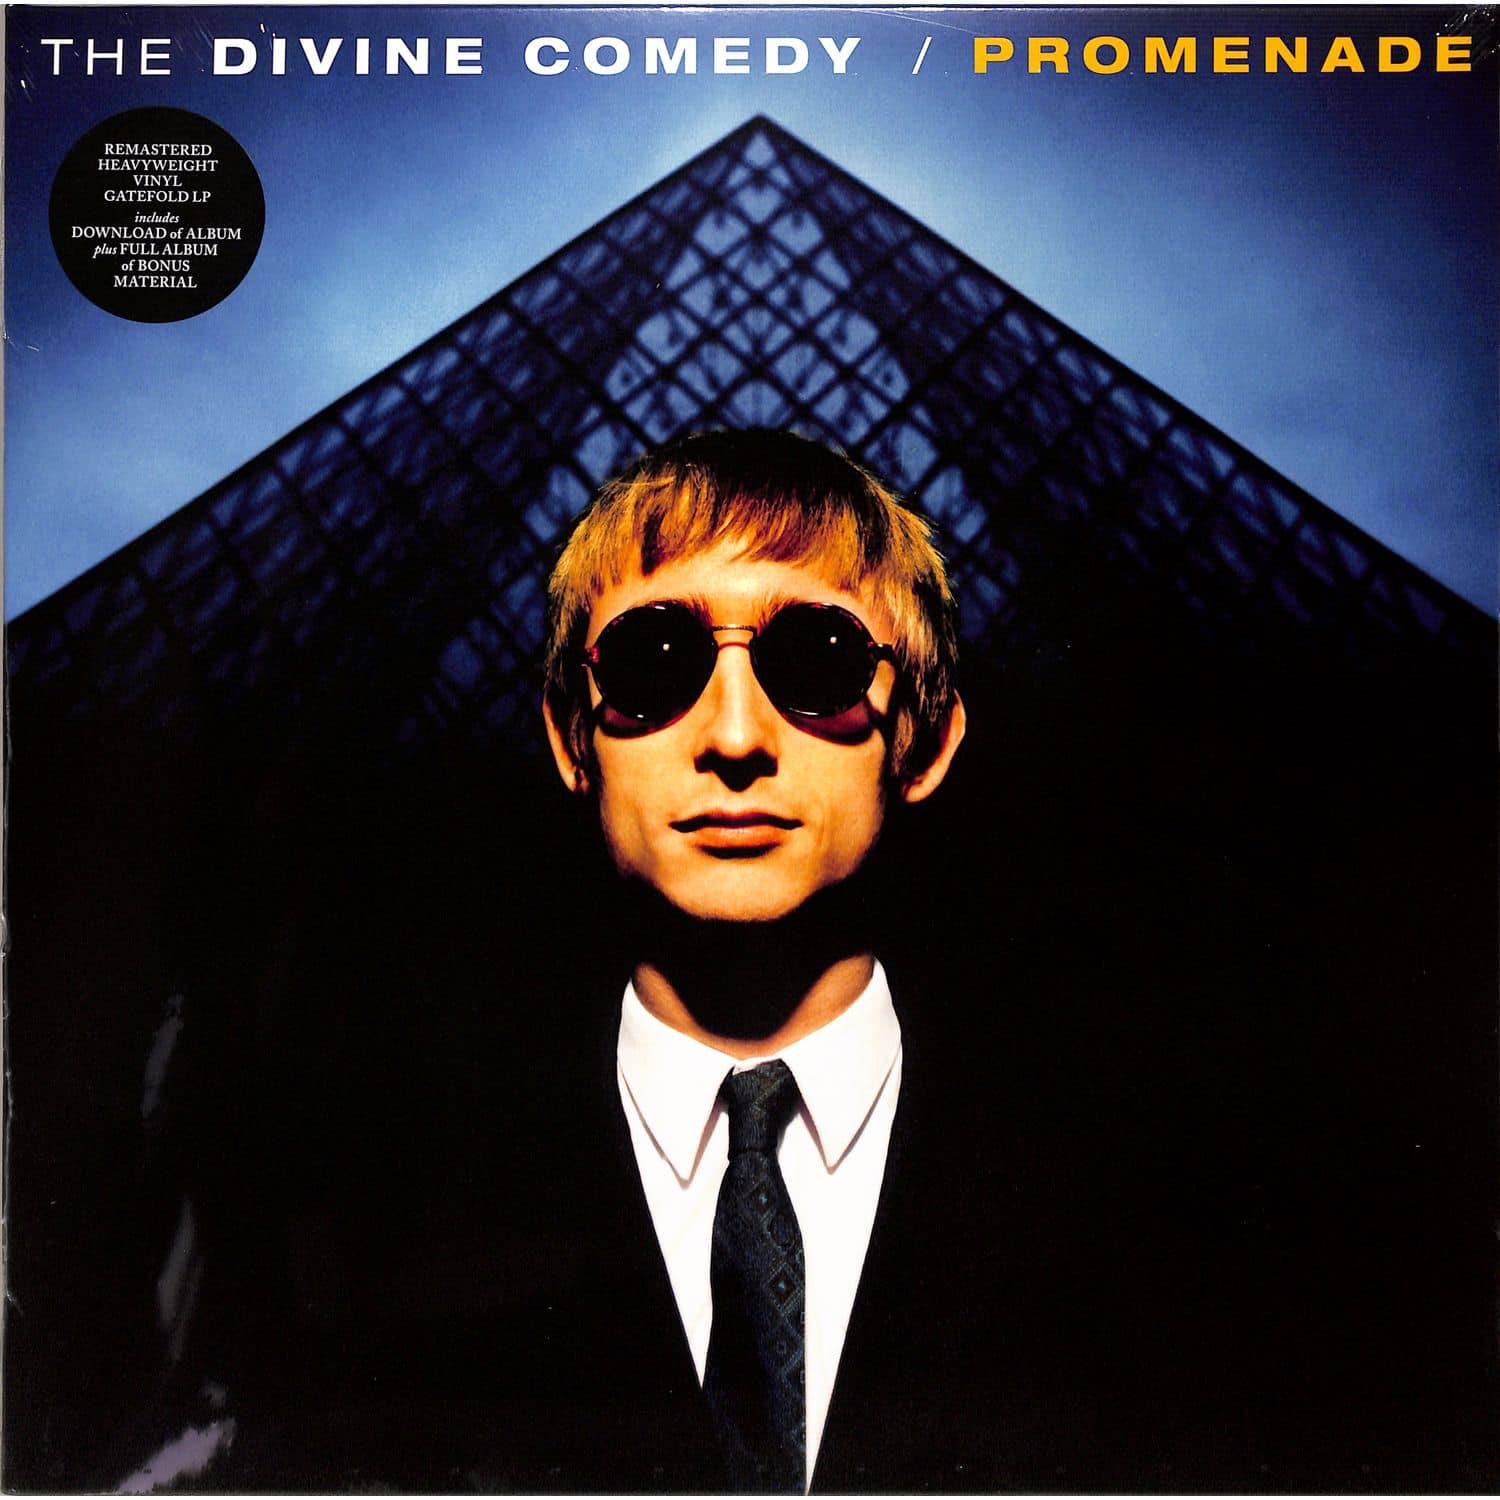 The Divine Comedy - PROMENADE 